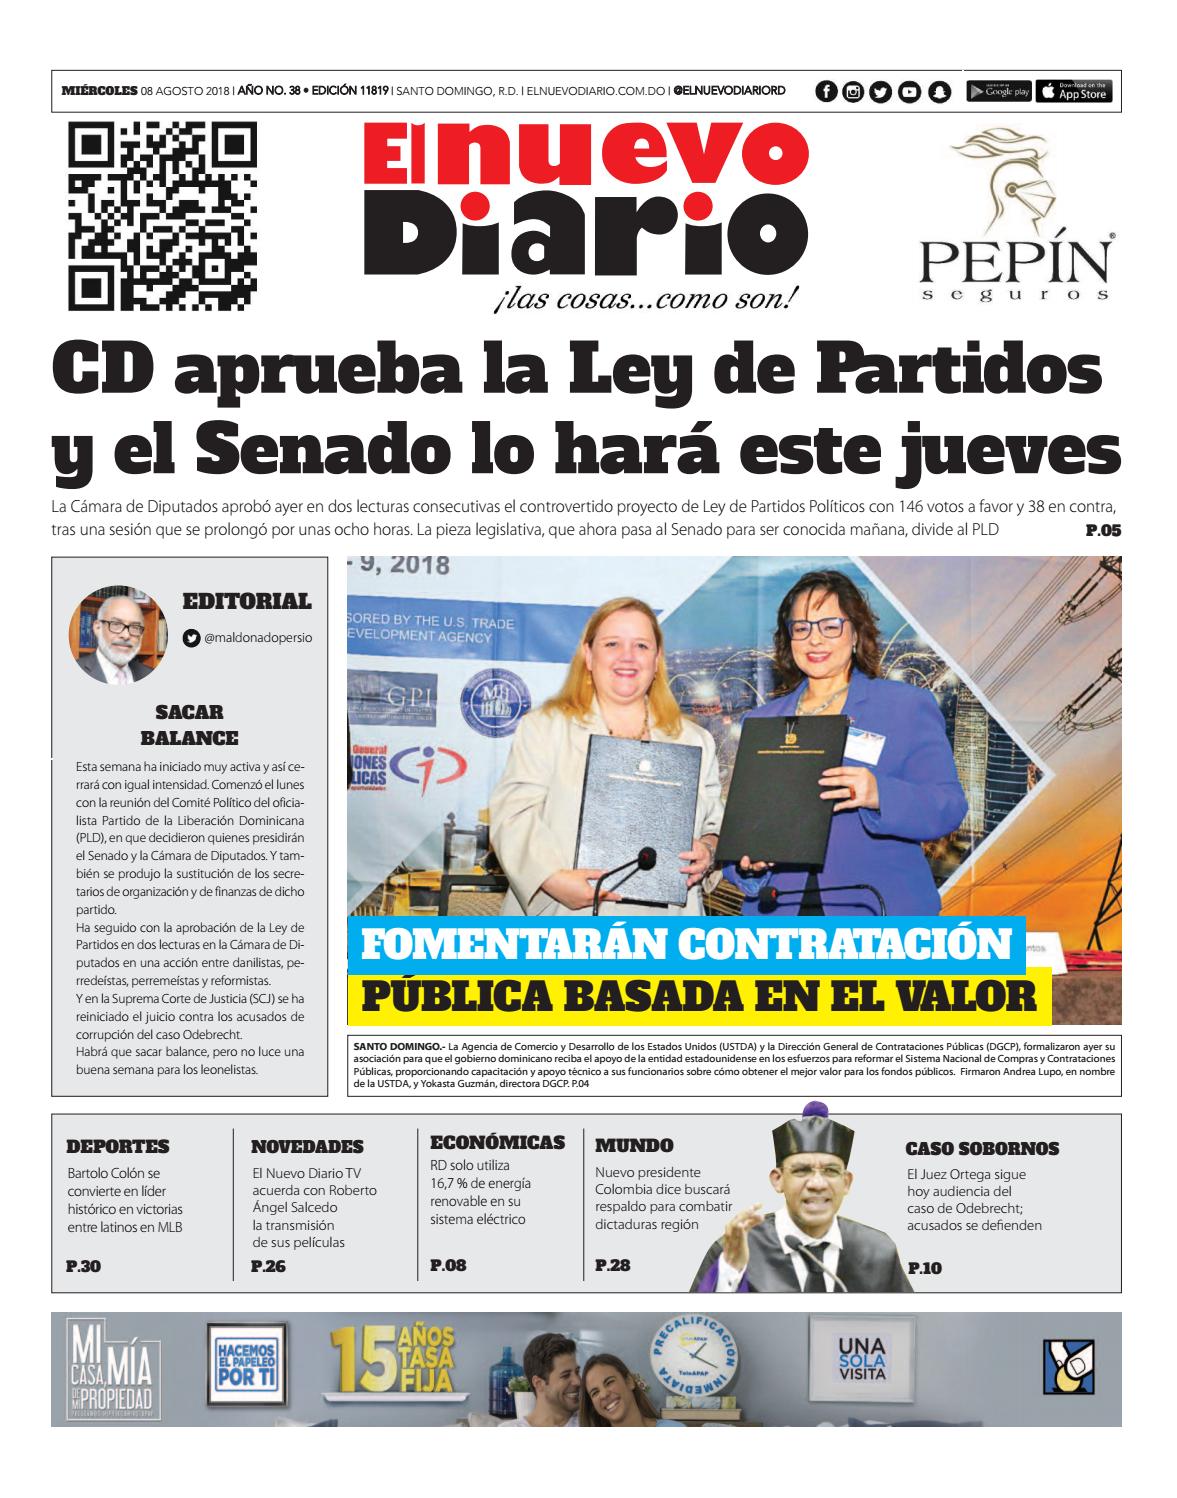 Portada Periódico El Nuevo Diario, Miércoles 8 de Agosto 2018